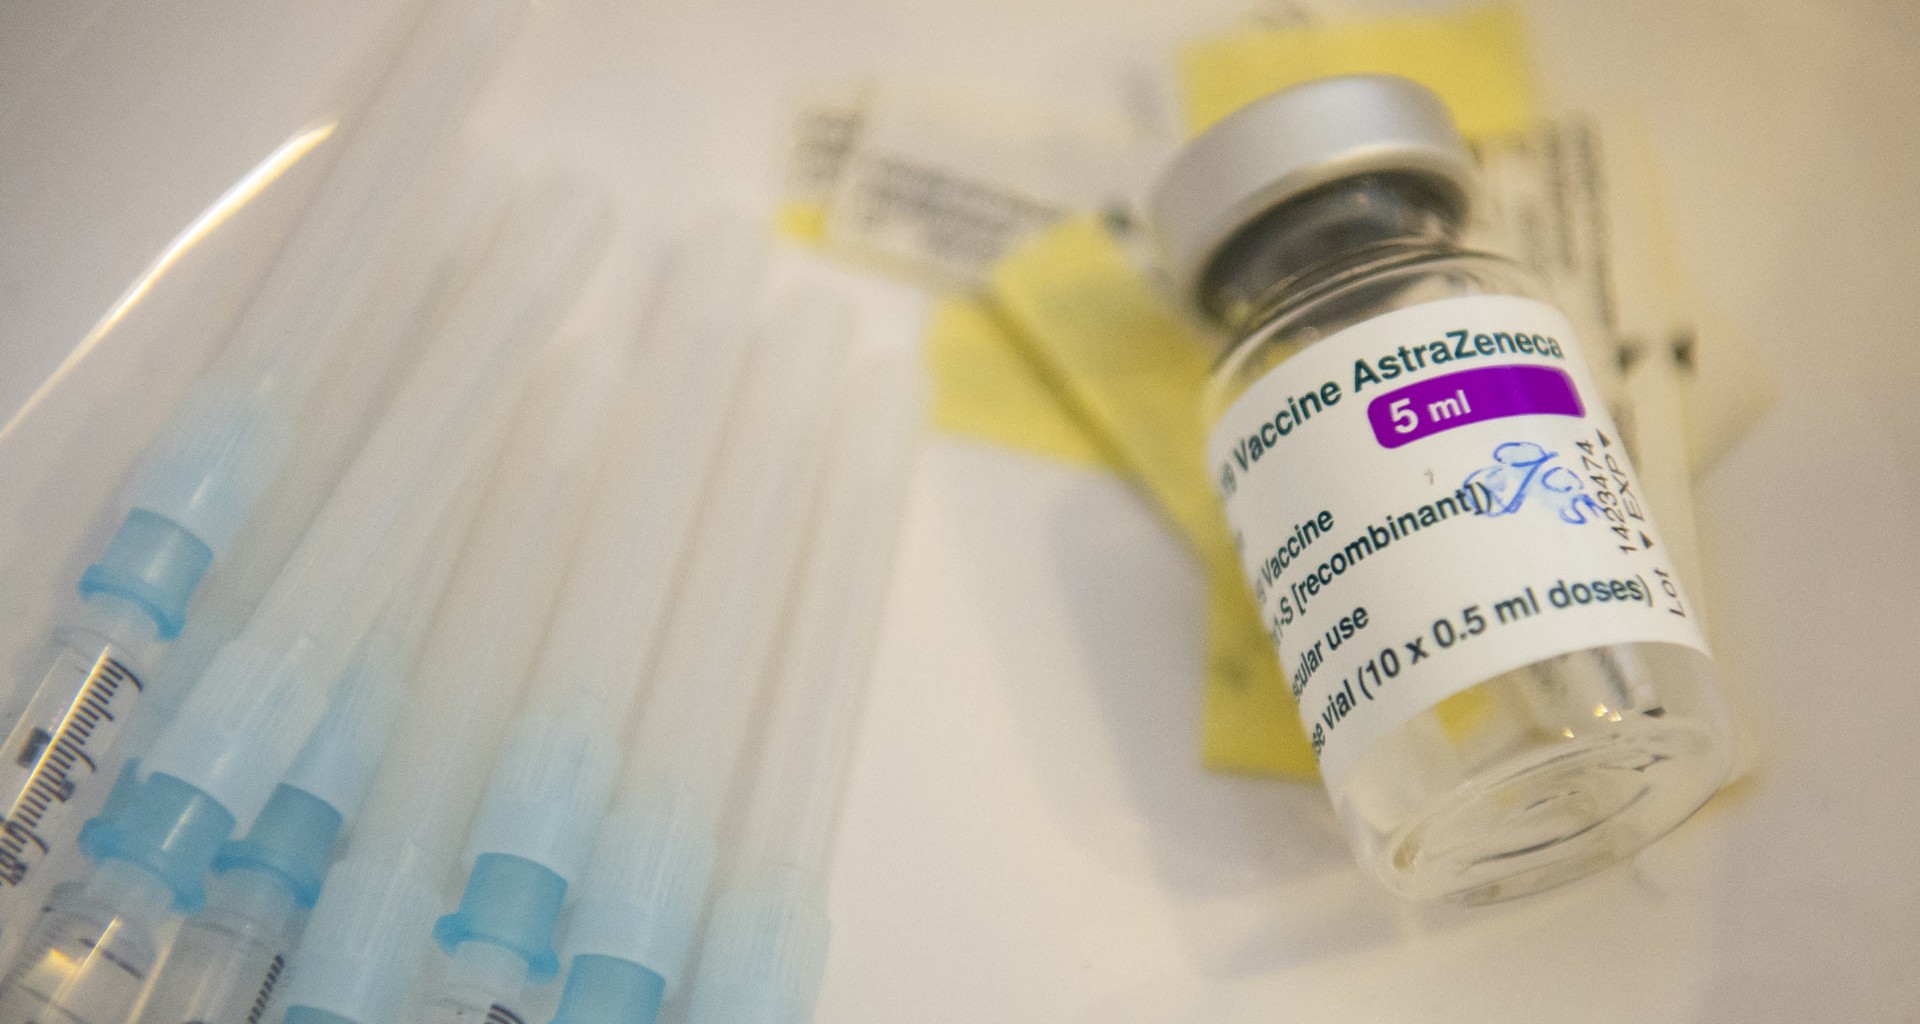 Efectos secundarios de vacuna AstraZeneca después de tercera dosis